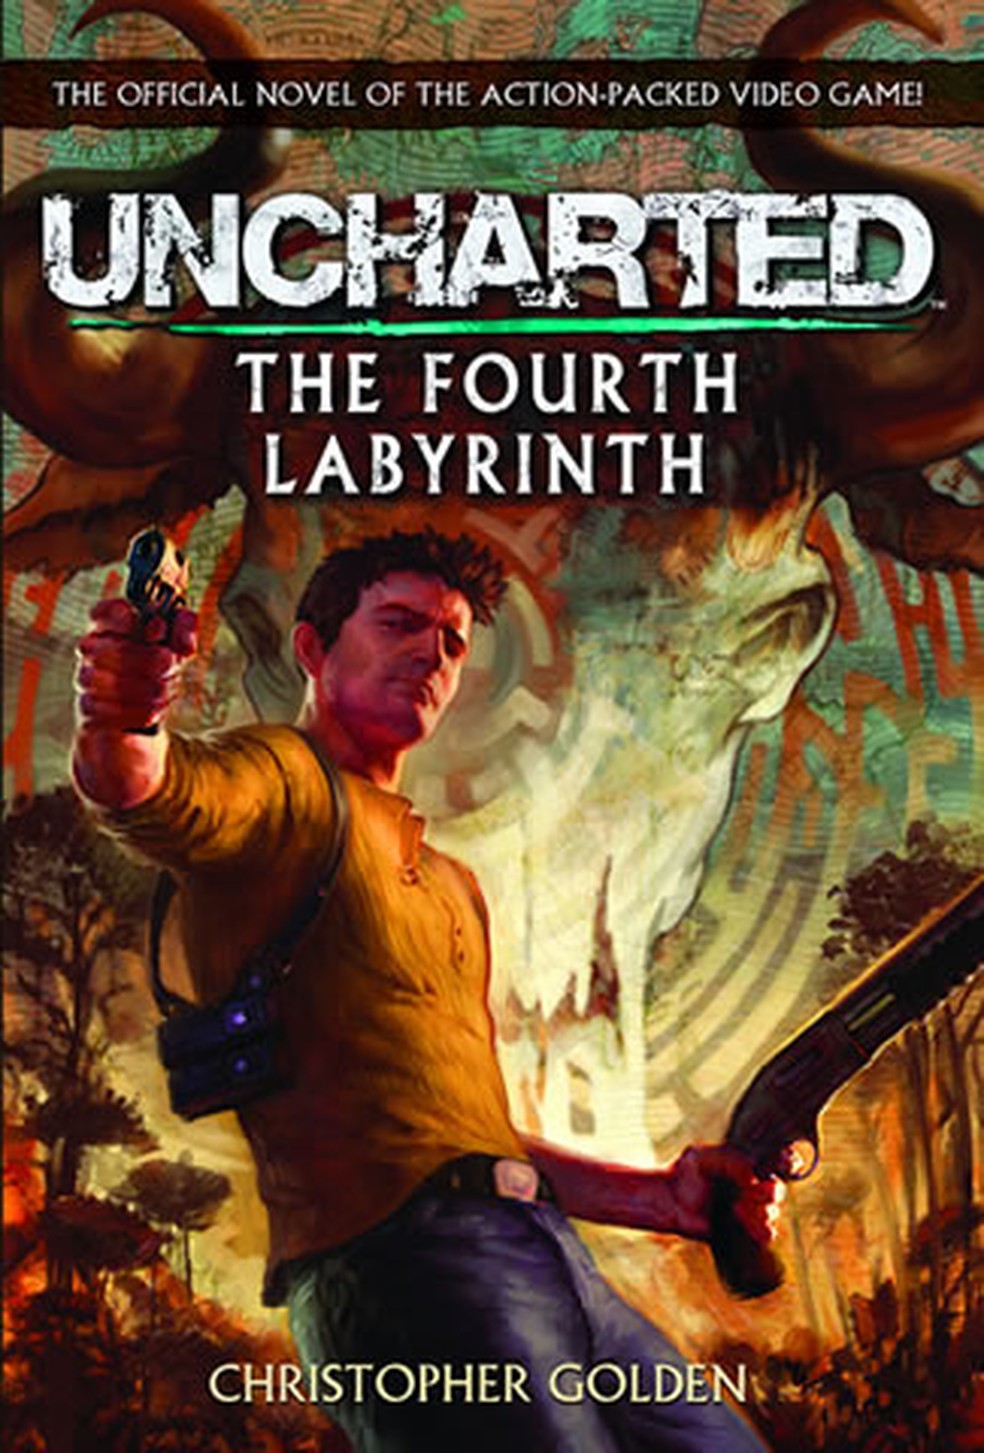 Uncharted: Fora do Mapa chega para virar o jogo